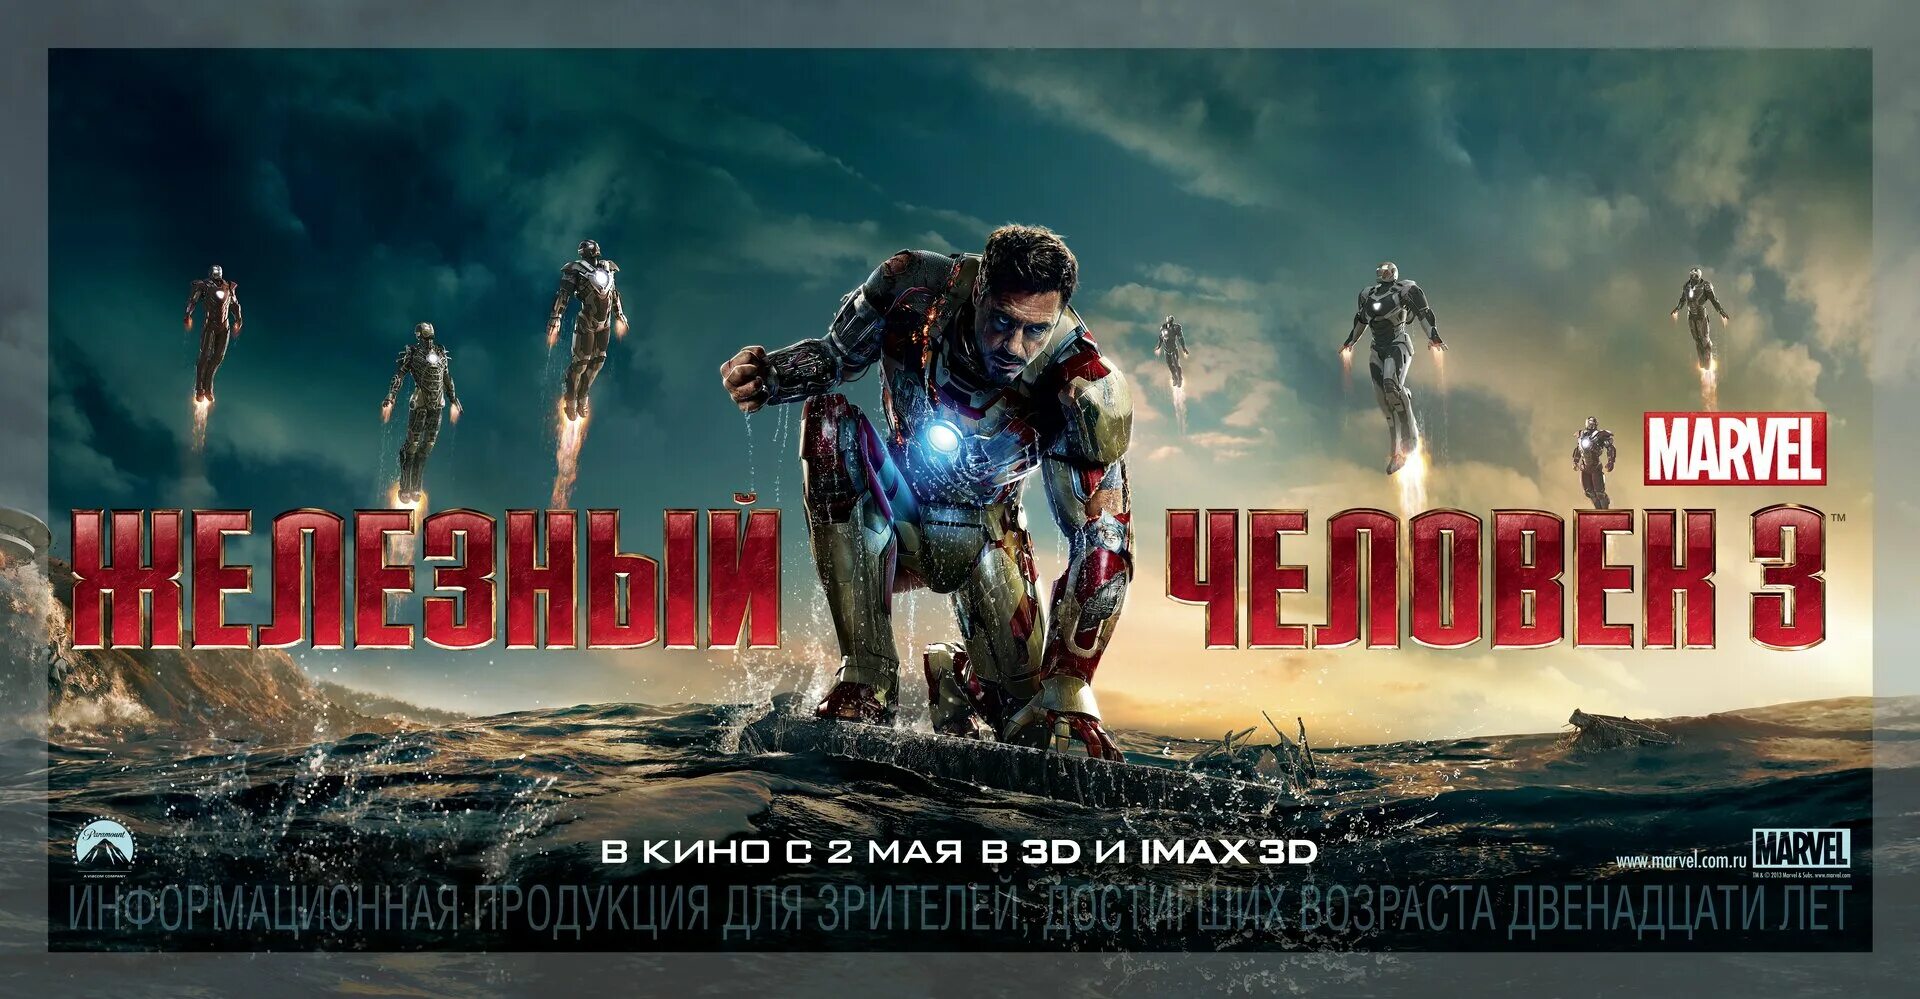 Железный человек три 3. Iron man 3 2013. Постер а3 Железный человек. Железный человек 3 2013 Постер.